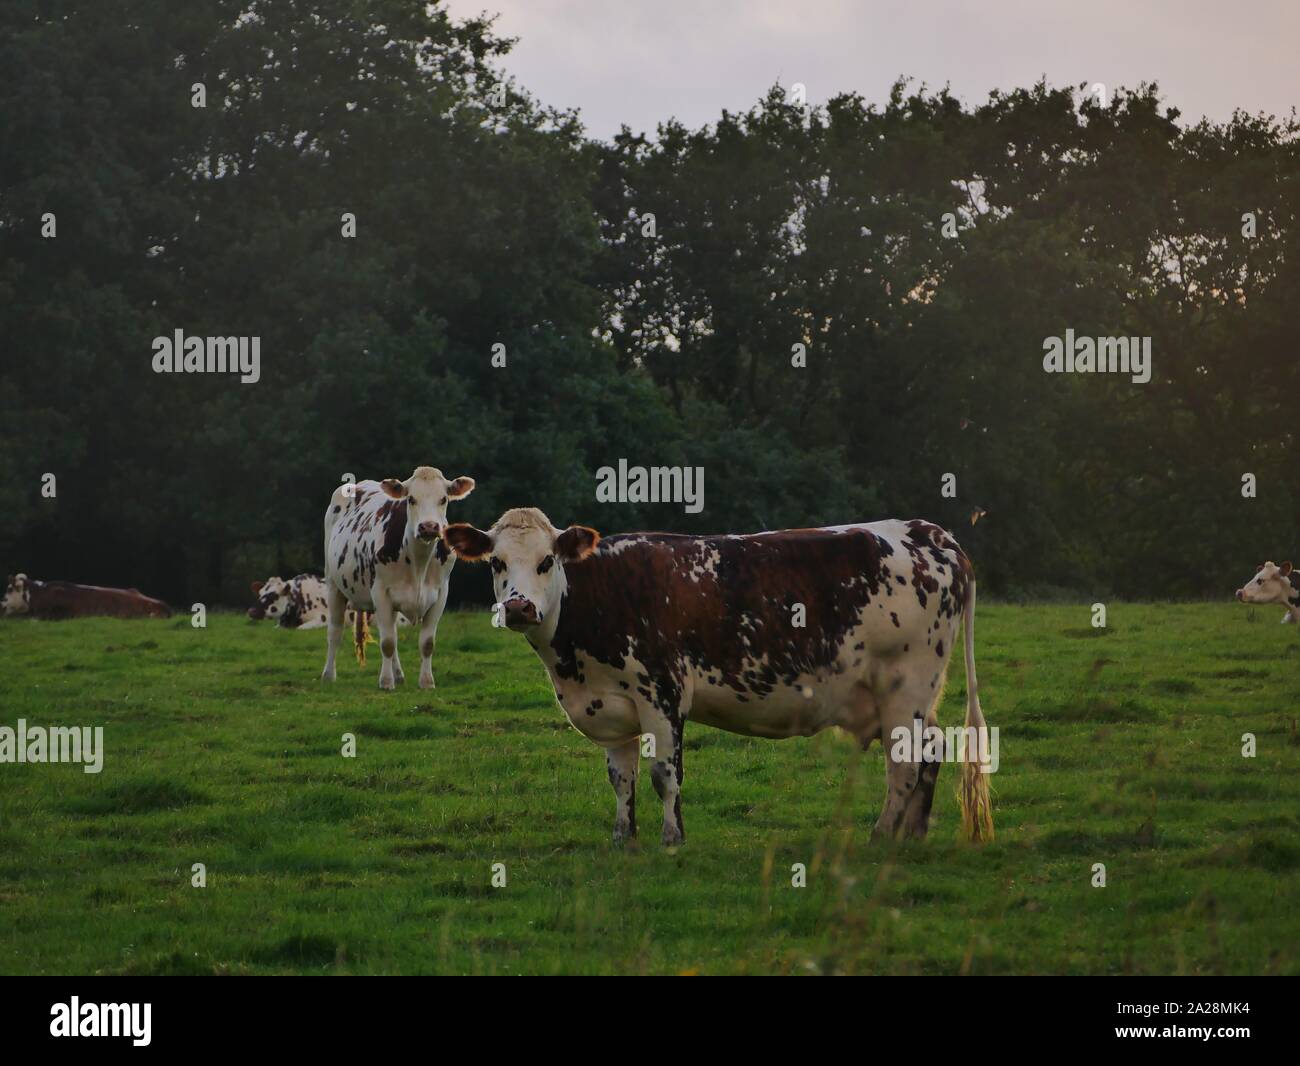 Vache dans un-Prés, troupeau de Vaches, vache à lait, vache ein VIANDE, vache Breton, vache qui broute de l herbe Stockfoto